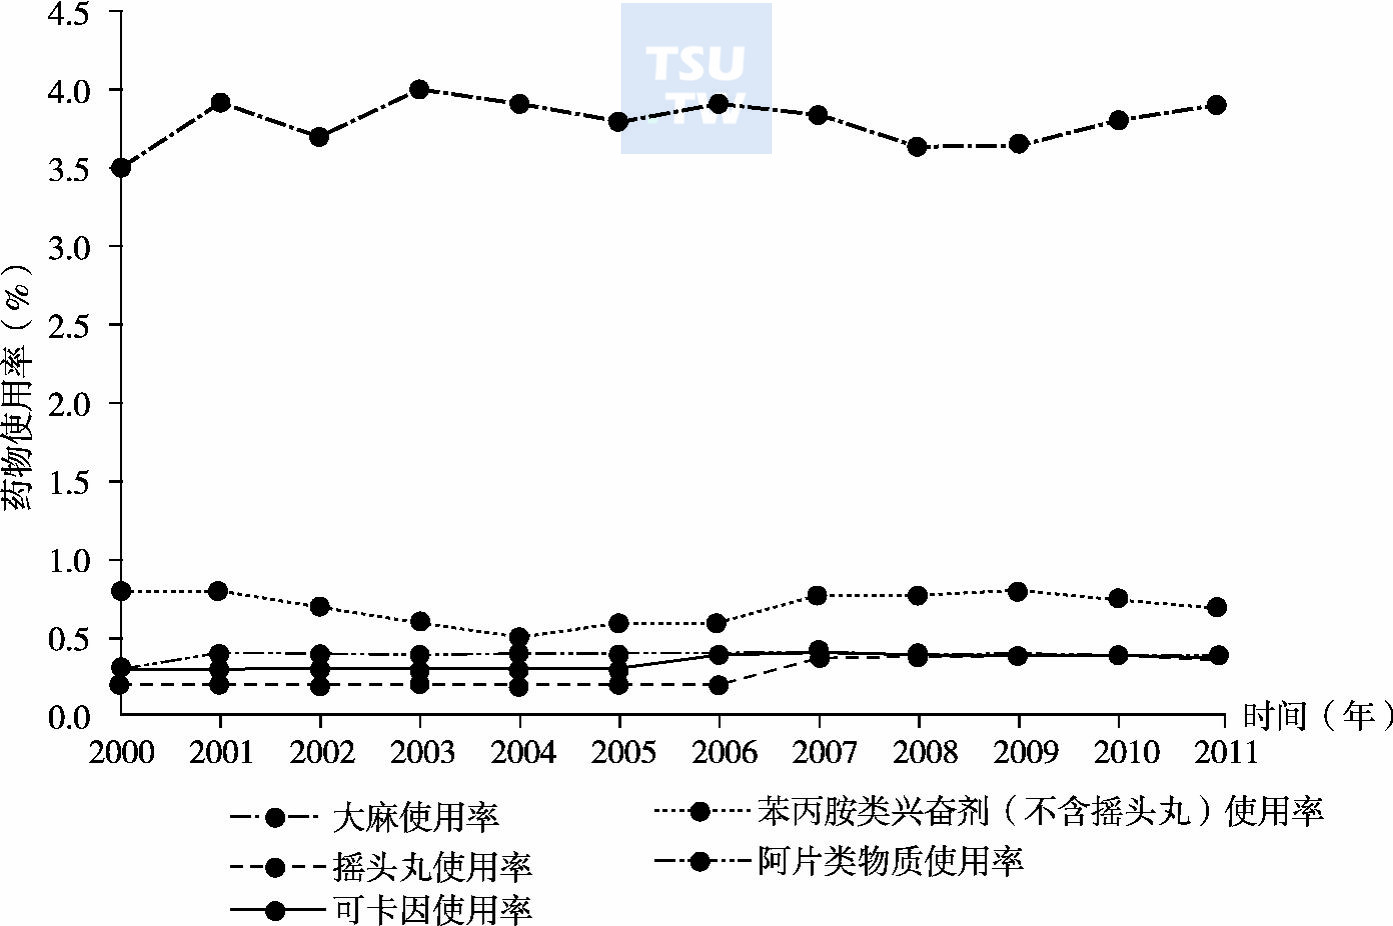  2000～2011年全球15～64岁人群中各类非法药物使用率